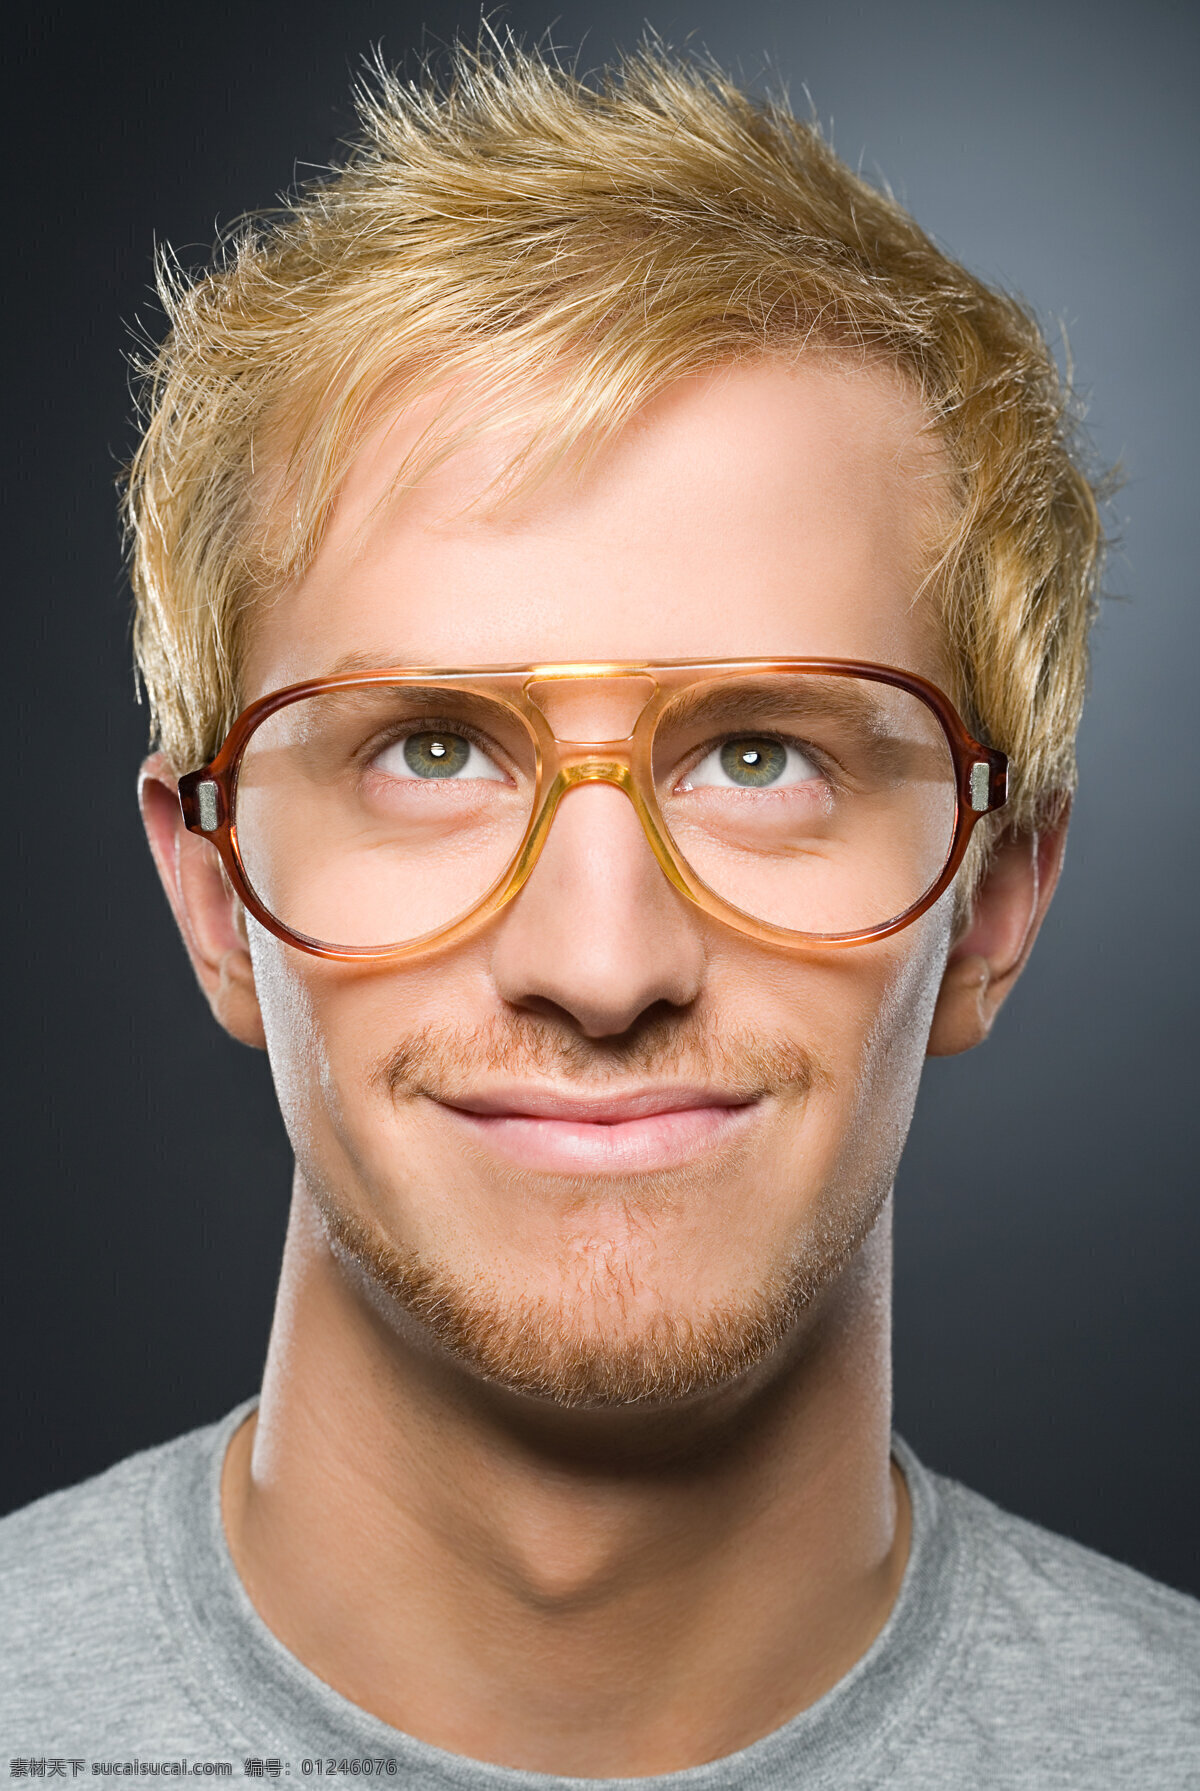 带 眼镜 男人 人物 男士 外国男人 模特 镜框 黄头发 瞳孔 帅气 微笑 人物素材 高清图片 男人图片 人物图片